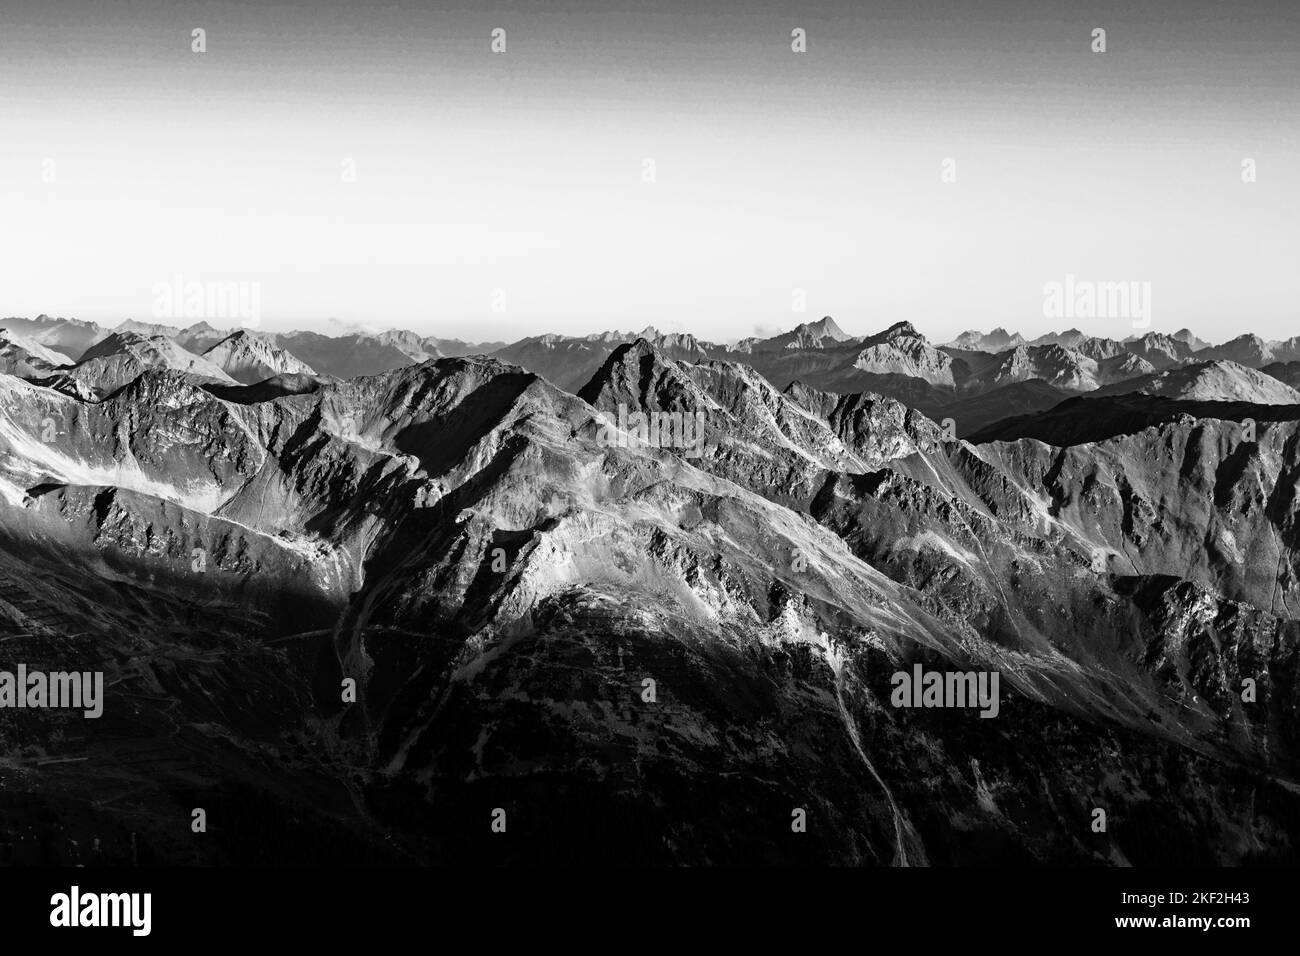 Vette alpine illuminate dal sole che sorge. Ortles Group, Alpi Italiane, Italia. Immagine in bianco e nero. Foto Stock